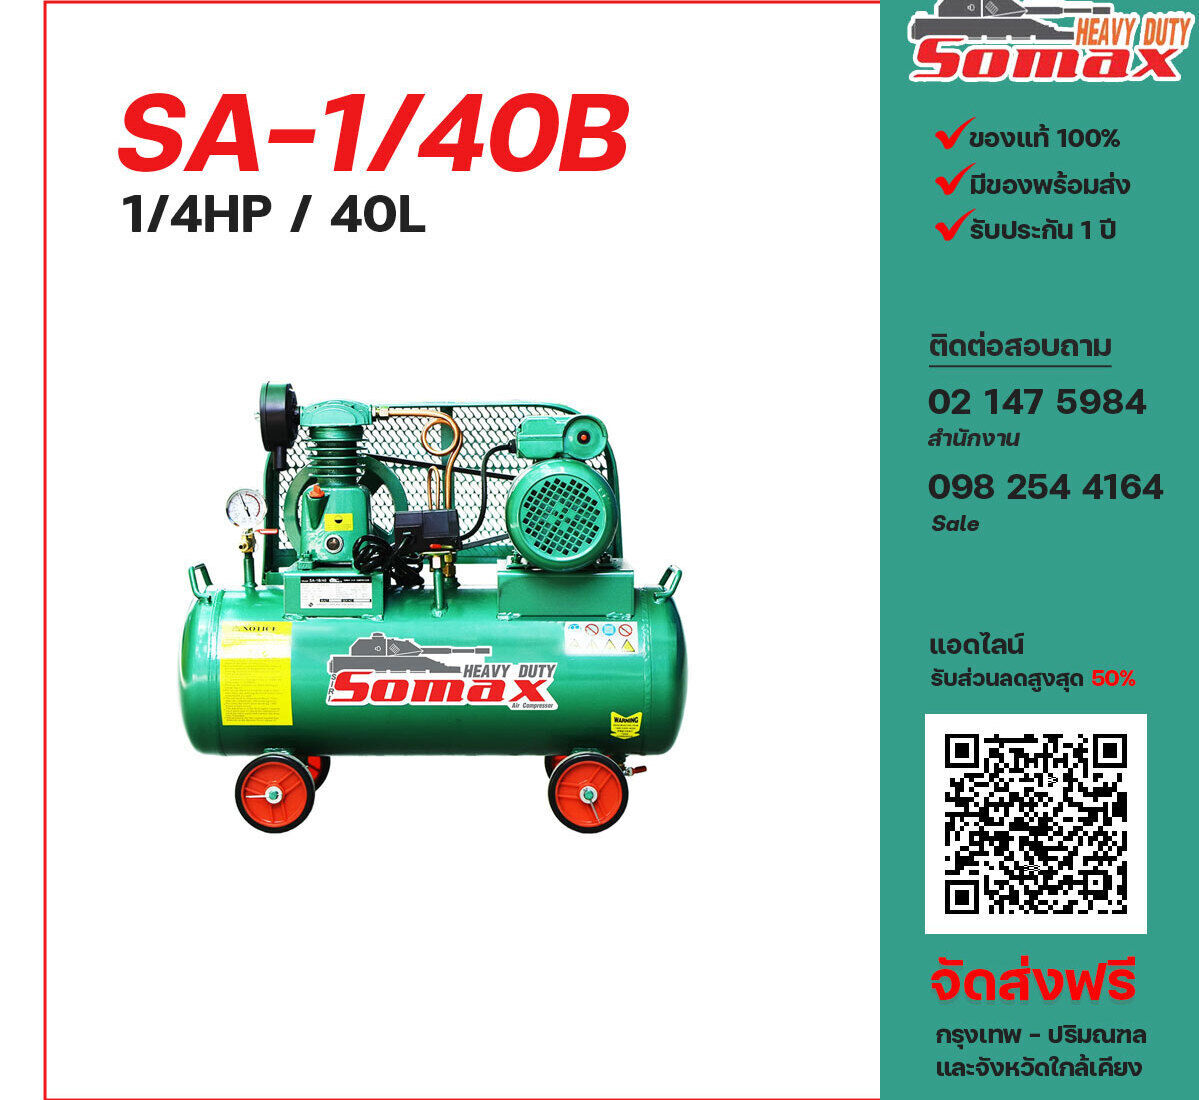 ปั๊มลมโซแม็กซ์ SOMAX SA-1/40B 220V ปั๊มลมลูกสูบ ขนาด 1 สูบ 1/4 แรงม้า 40 ลิตร SOMAX พร้อมมอเตอร์ ไฟ 220V ส่งฟรี กรุงเทพฯ-ปริมณฑล รับประกัน 1 ปี